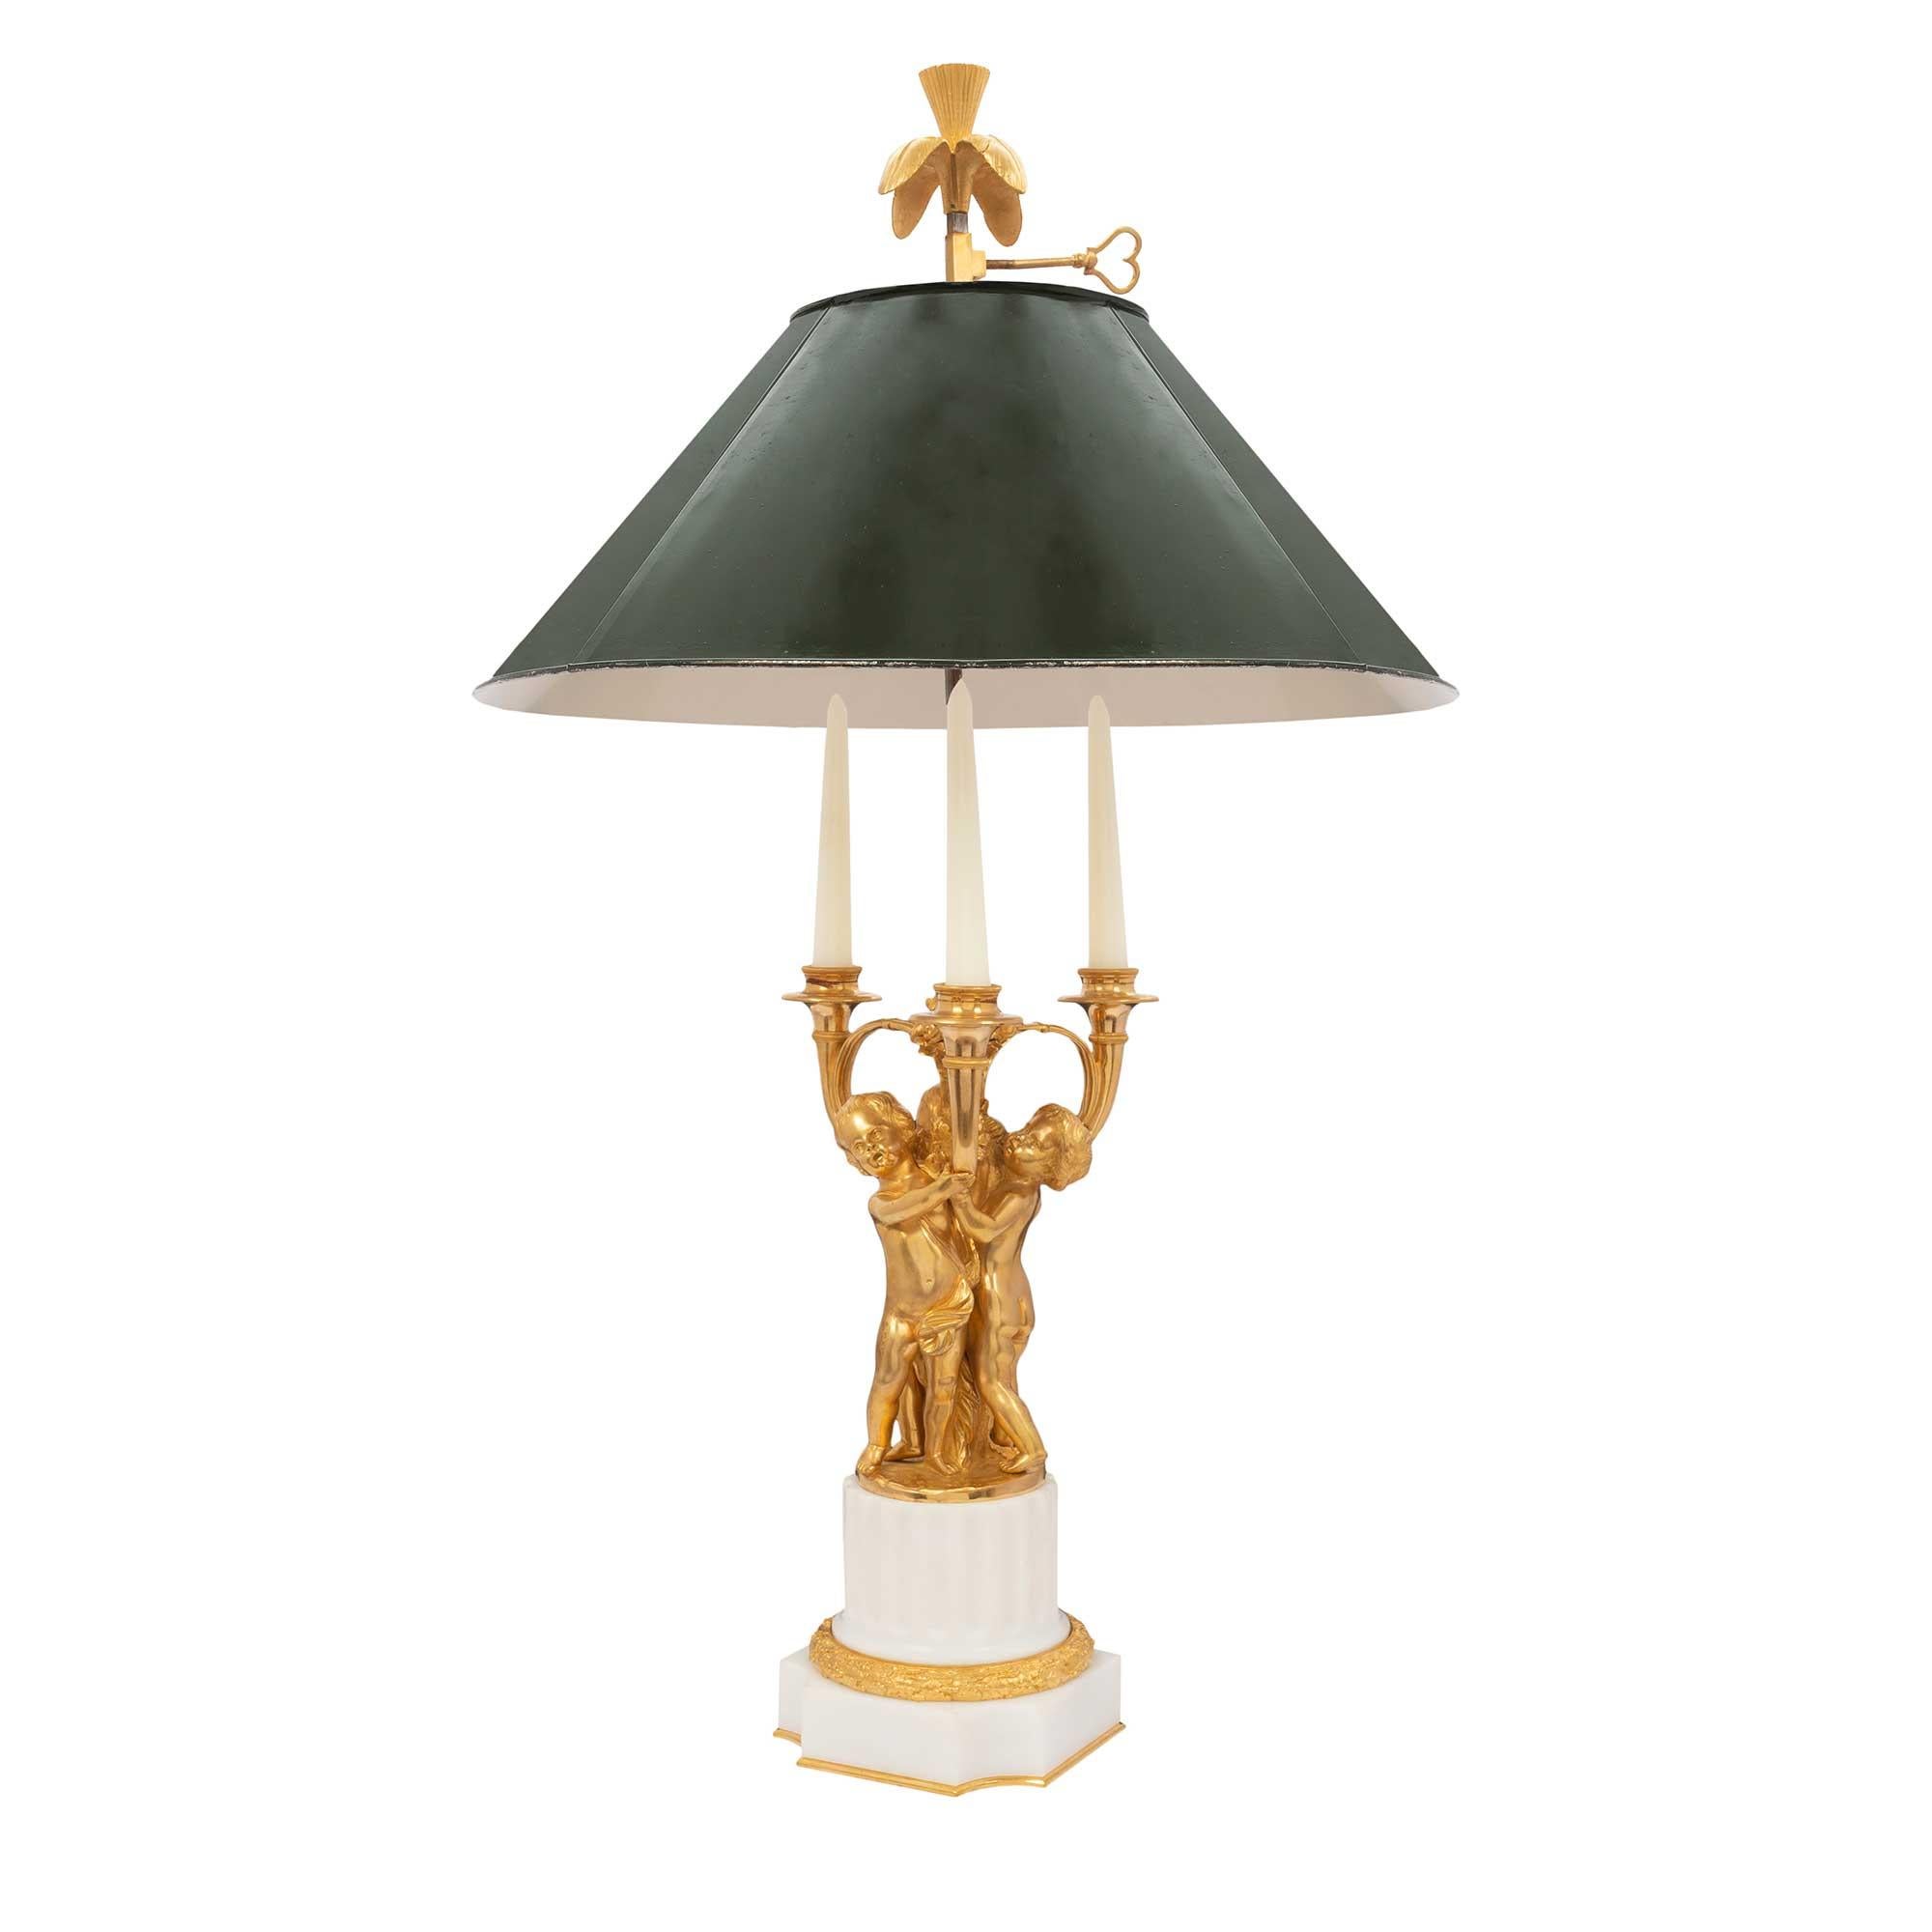 Charmant candélabre français du milieu du XIXe siècle en bronze doré et marbre blanc de Carrare, monté sur une lampe Bouillotte. La base carrée en marbre aux côtés concaves est richement ciselée d'une couronne de baies en bronze doré et soulevée par